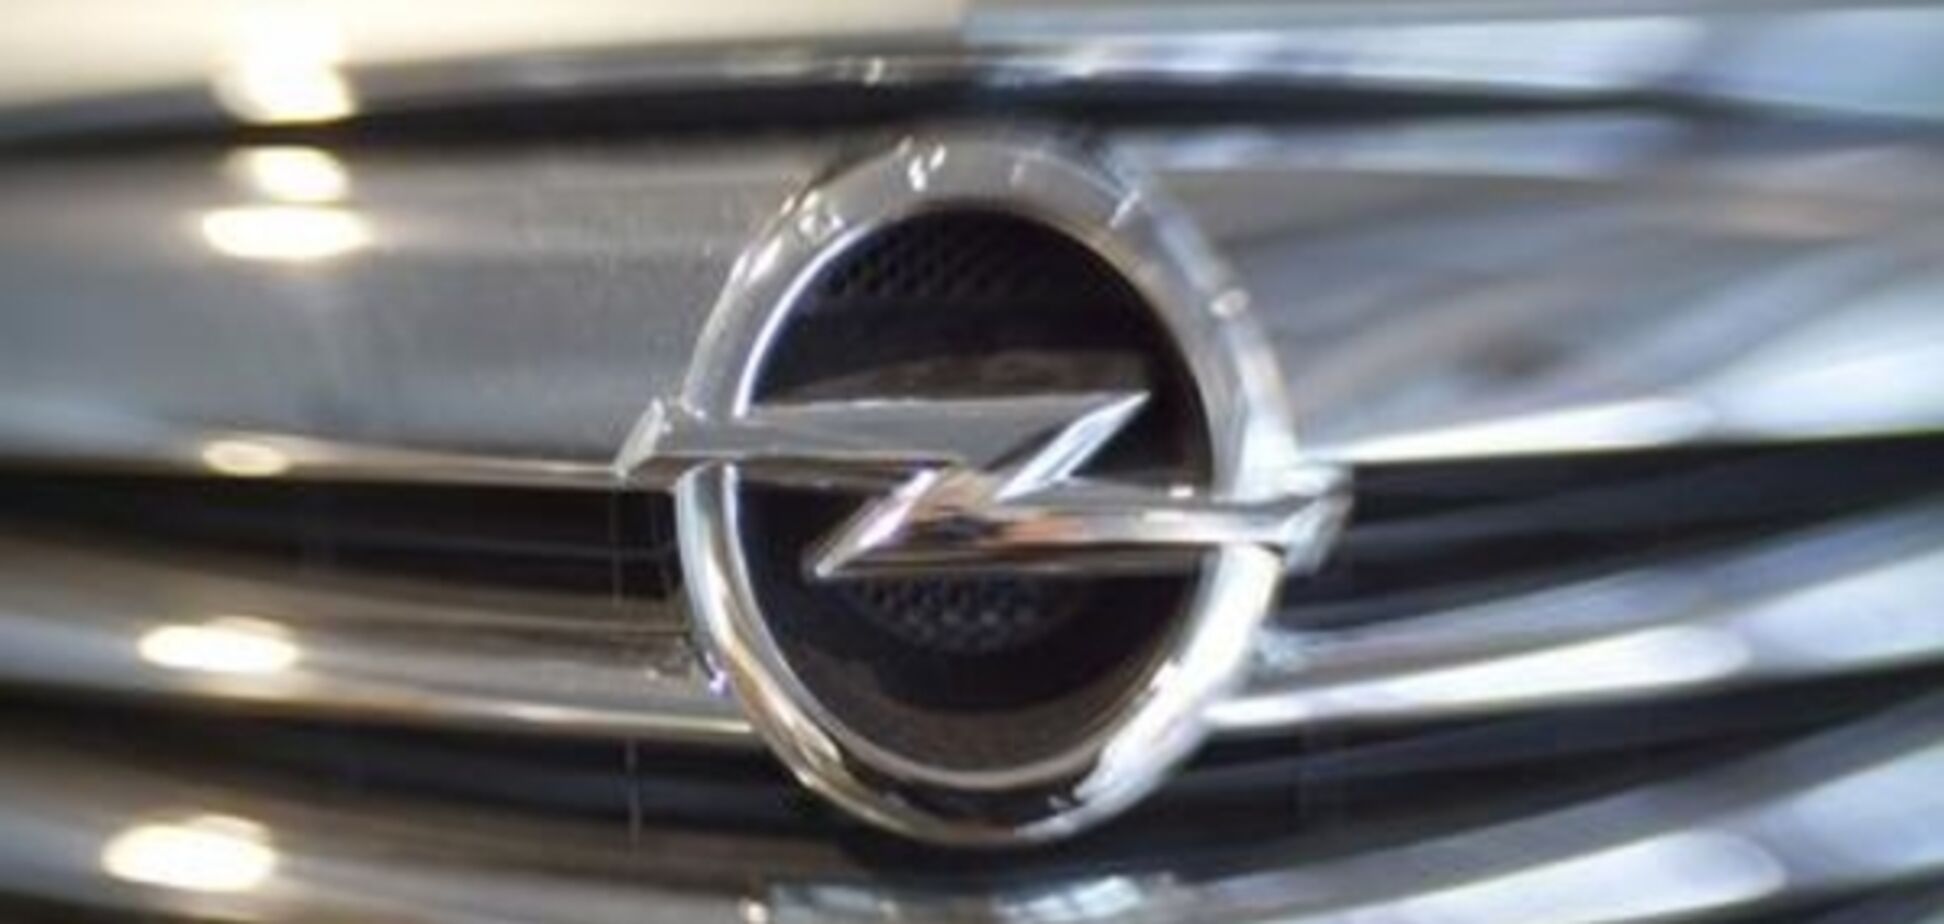 Берлін занепокоєний планами PSA Peugeot Citroën придбати Opel